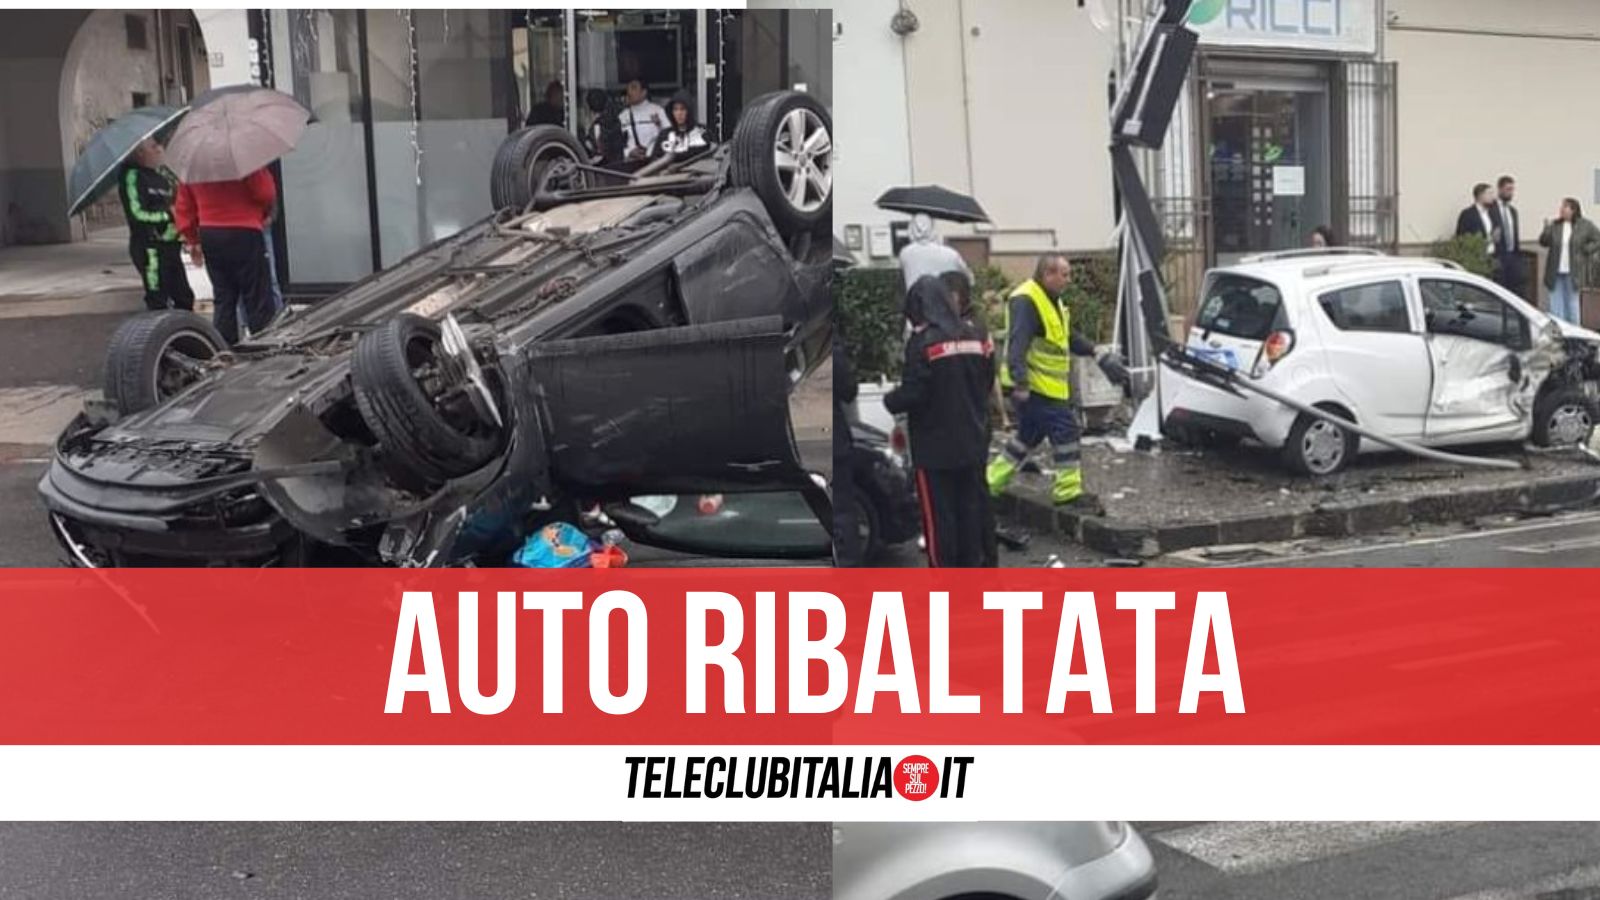 Spaventoso incidente a Mariglianella: miracolosamente illesi i passeggeri